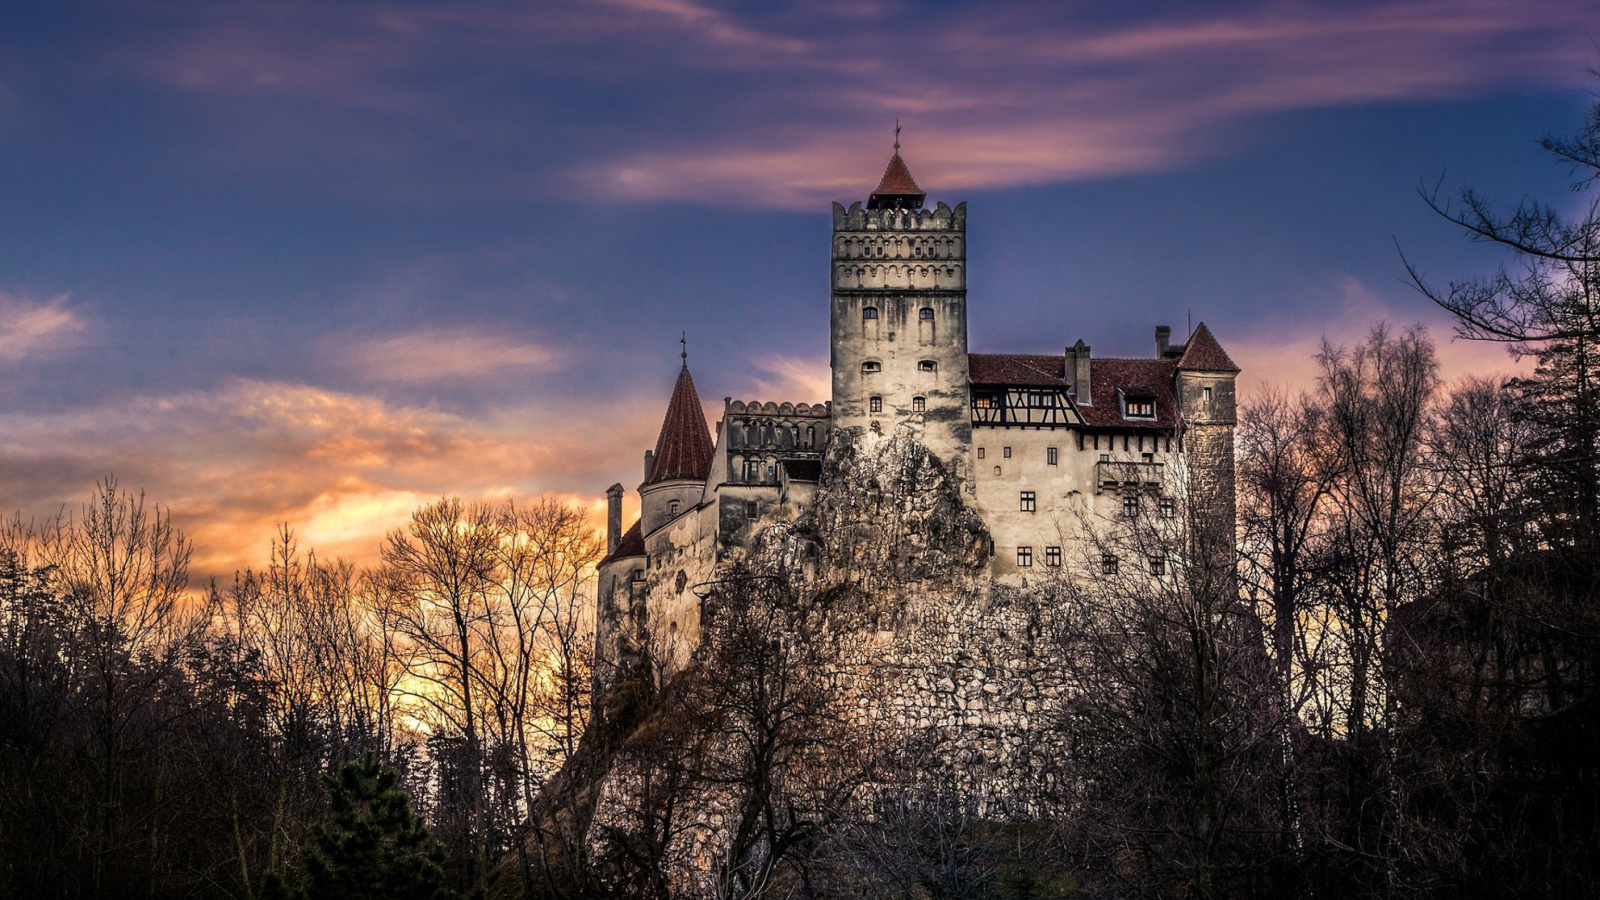 Обои Bran Castle in Romania 1600x900